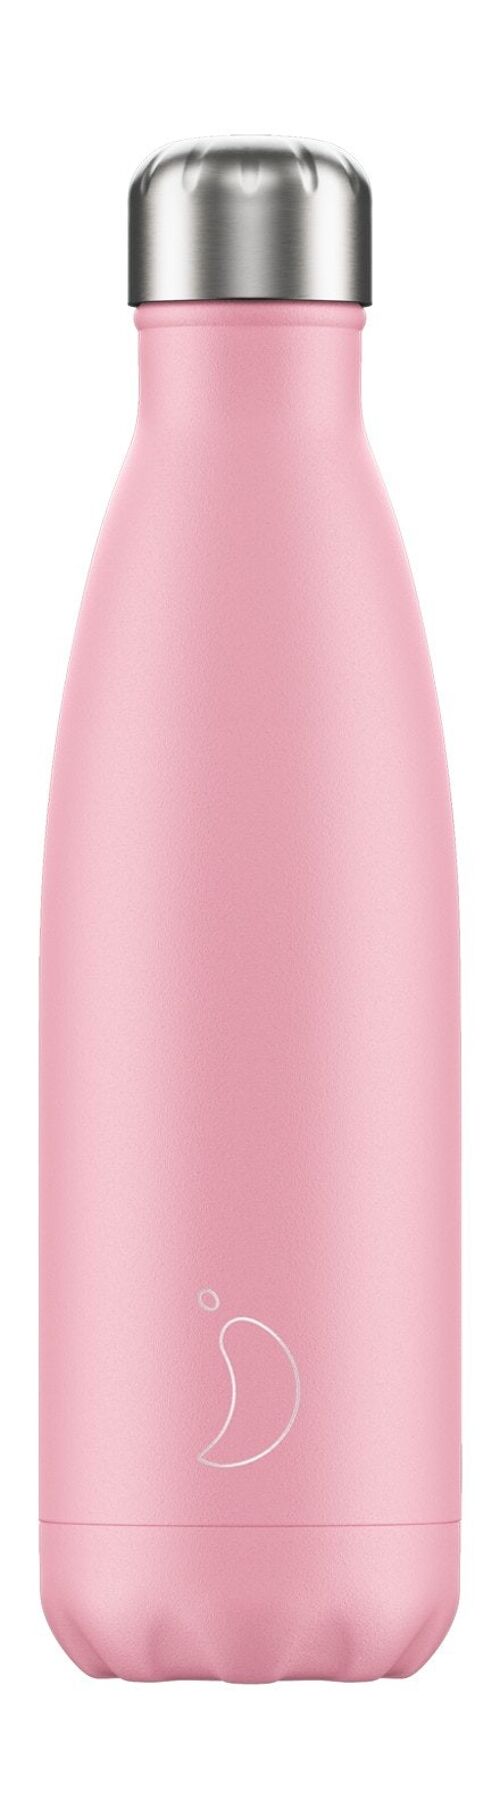 Trinkflasche 500ml Pastel Pink